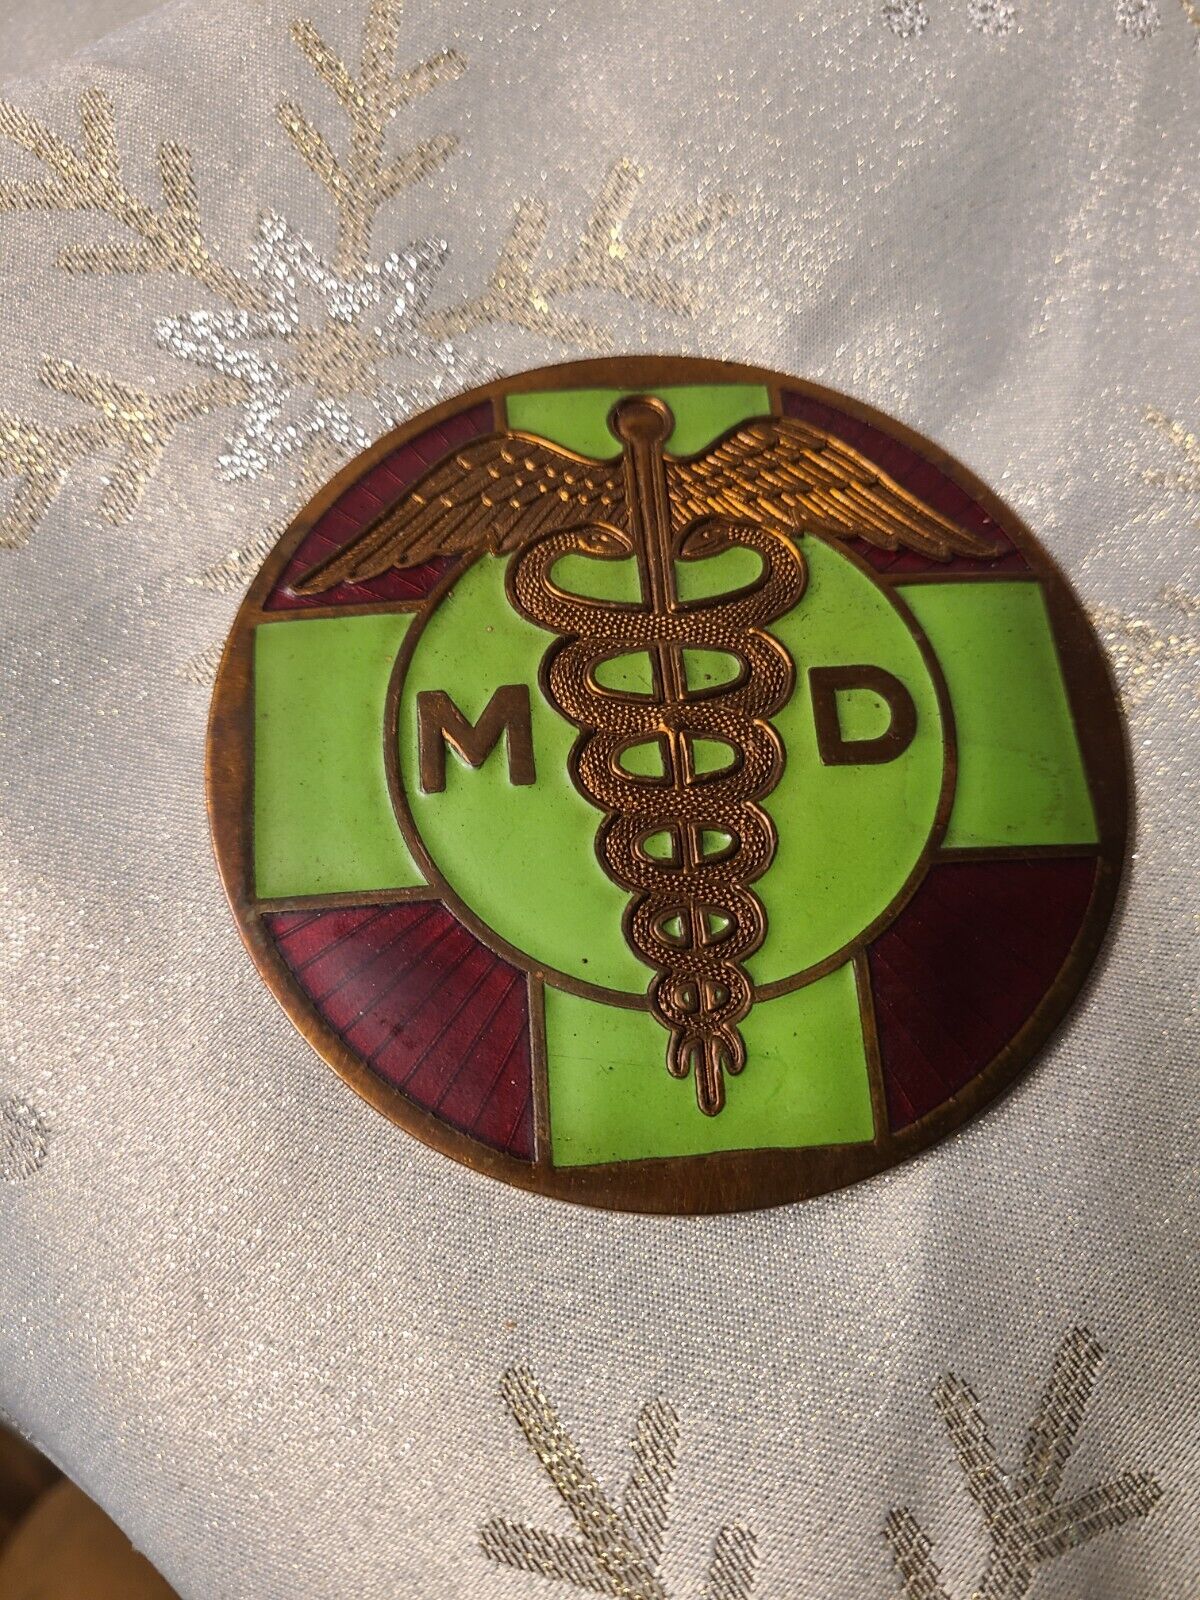 Vintage copper enameled MD (Medical Doctor) Car Grille/License Badge Emblem